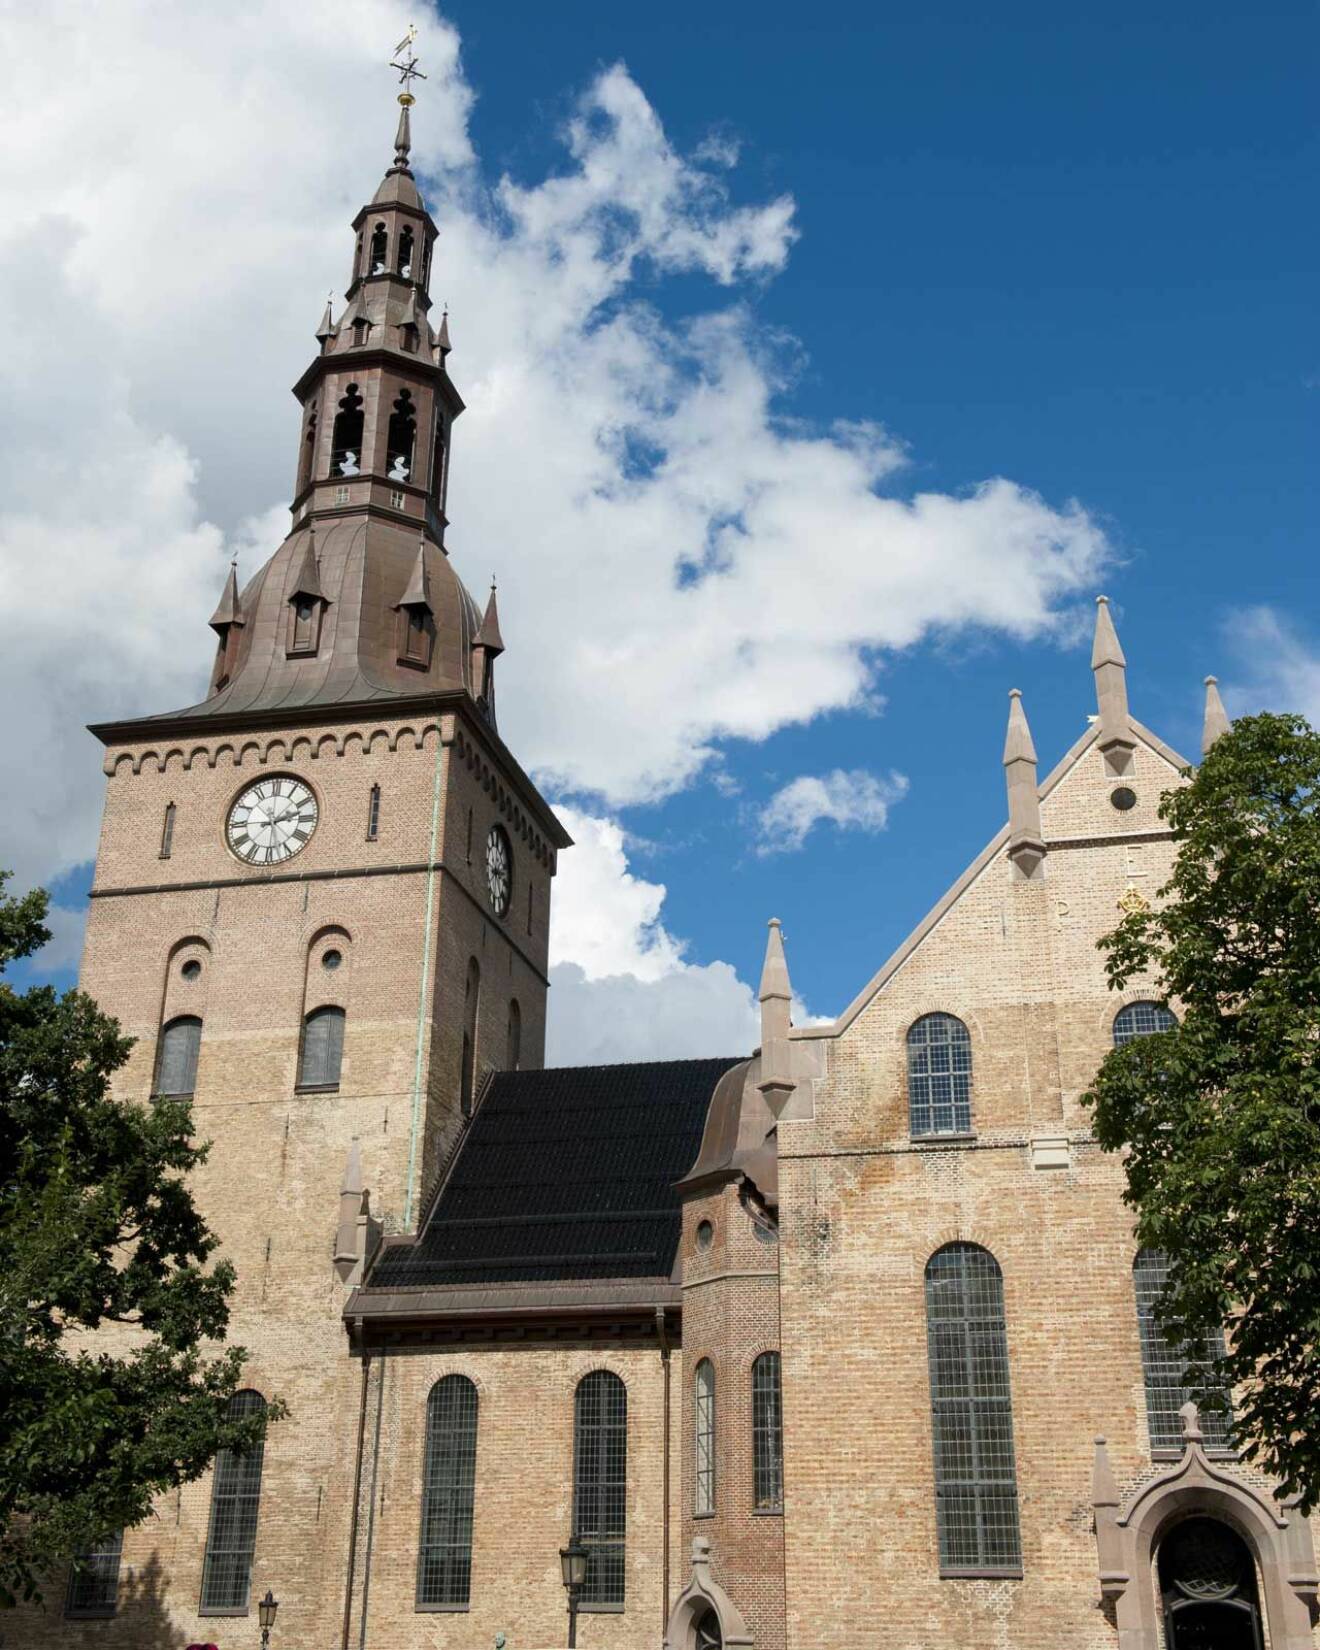 Domkyrkan i Oslo. Det var här som kronprins Harald sa ja till Sonja Haraldsen den där sensommardagen för precis 50 år sedan.